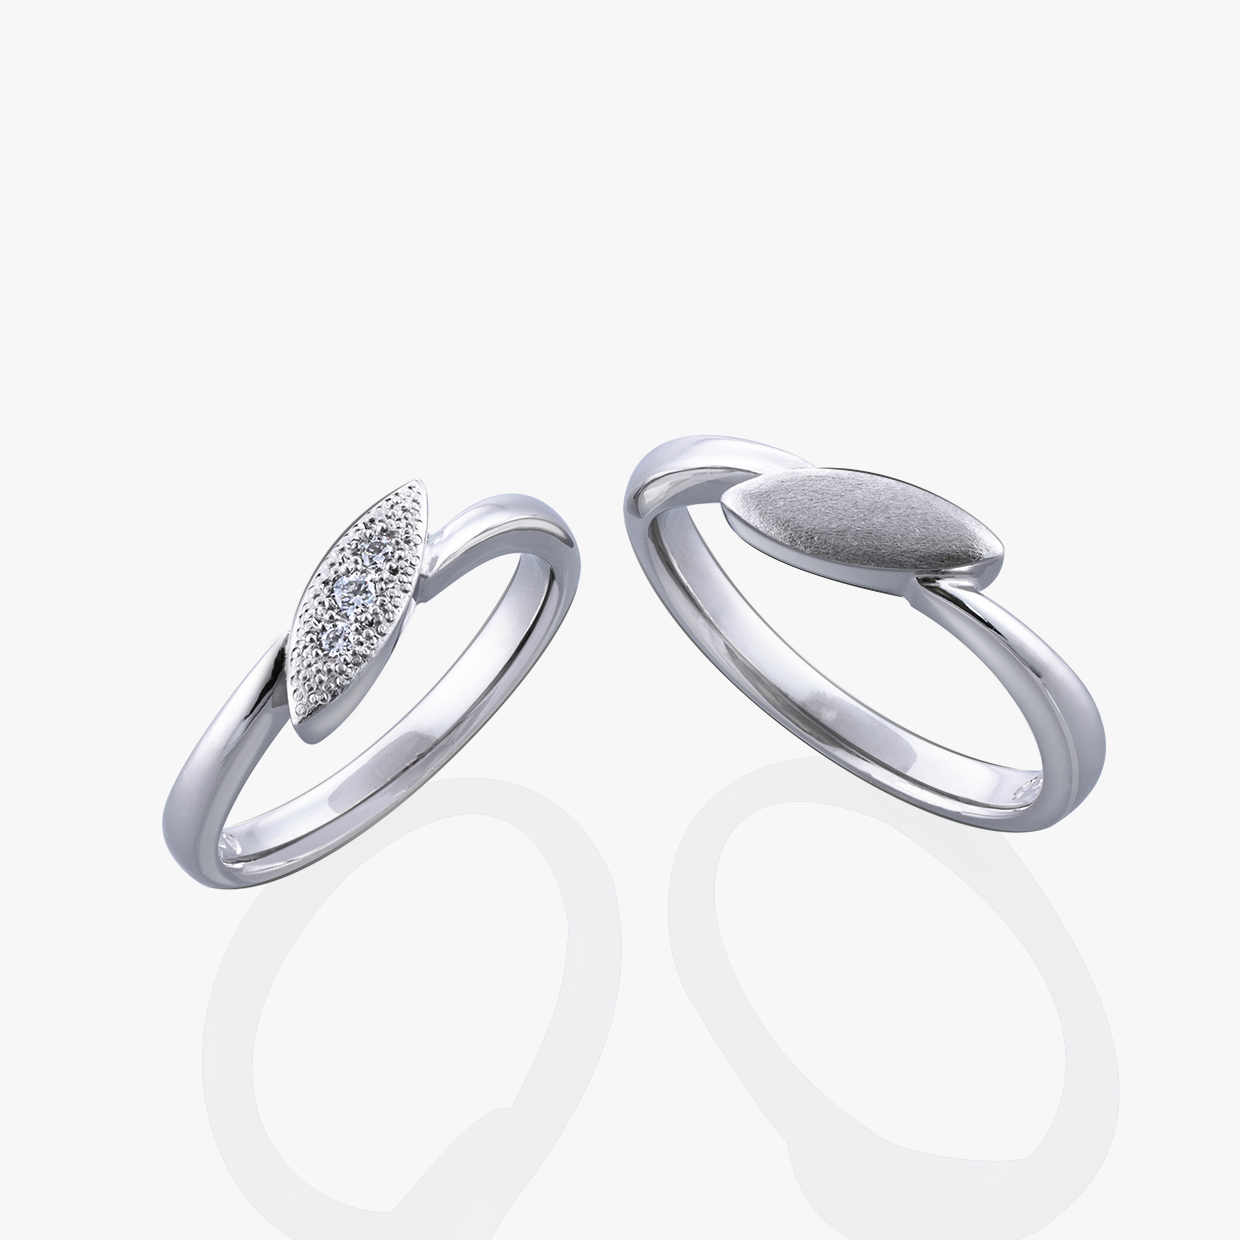 ダイヤモンドのリングと婚約指輪 04